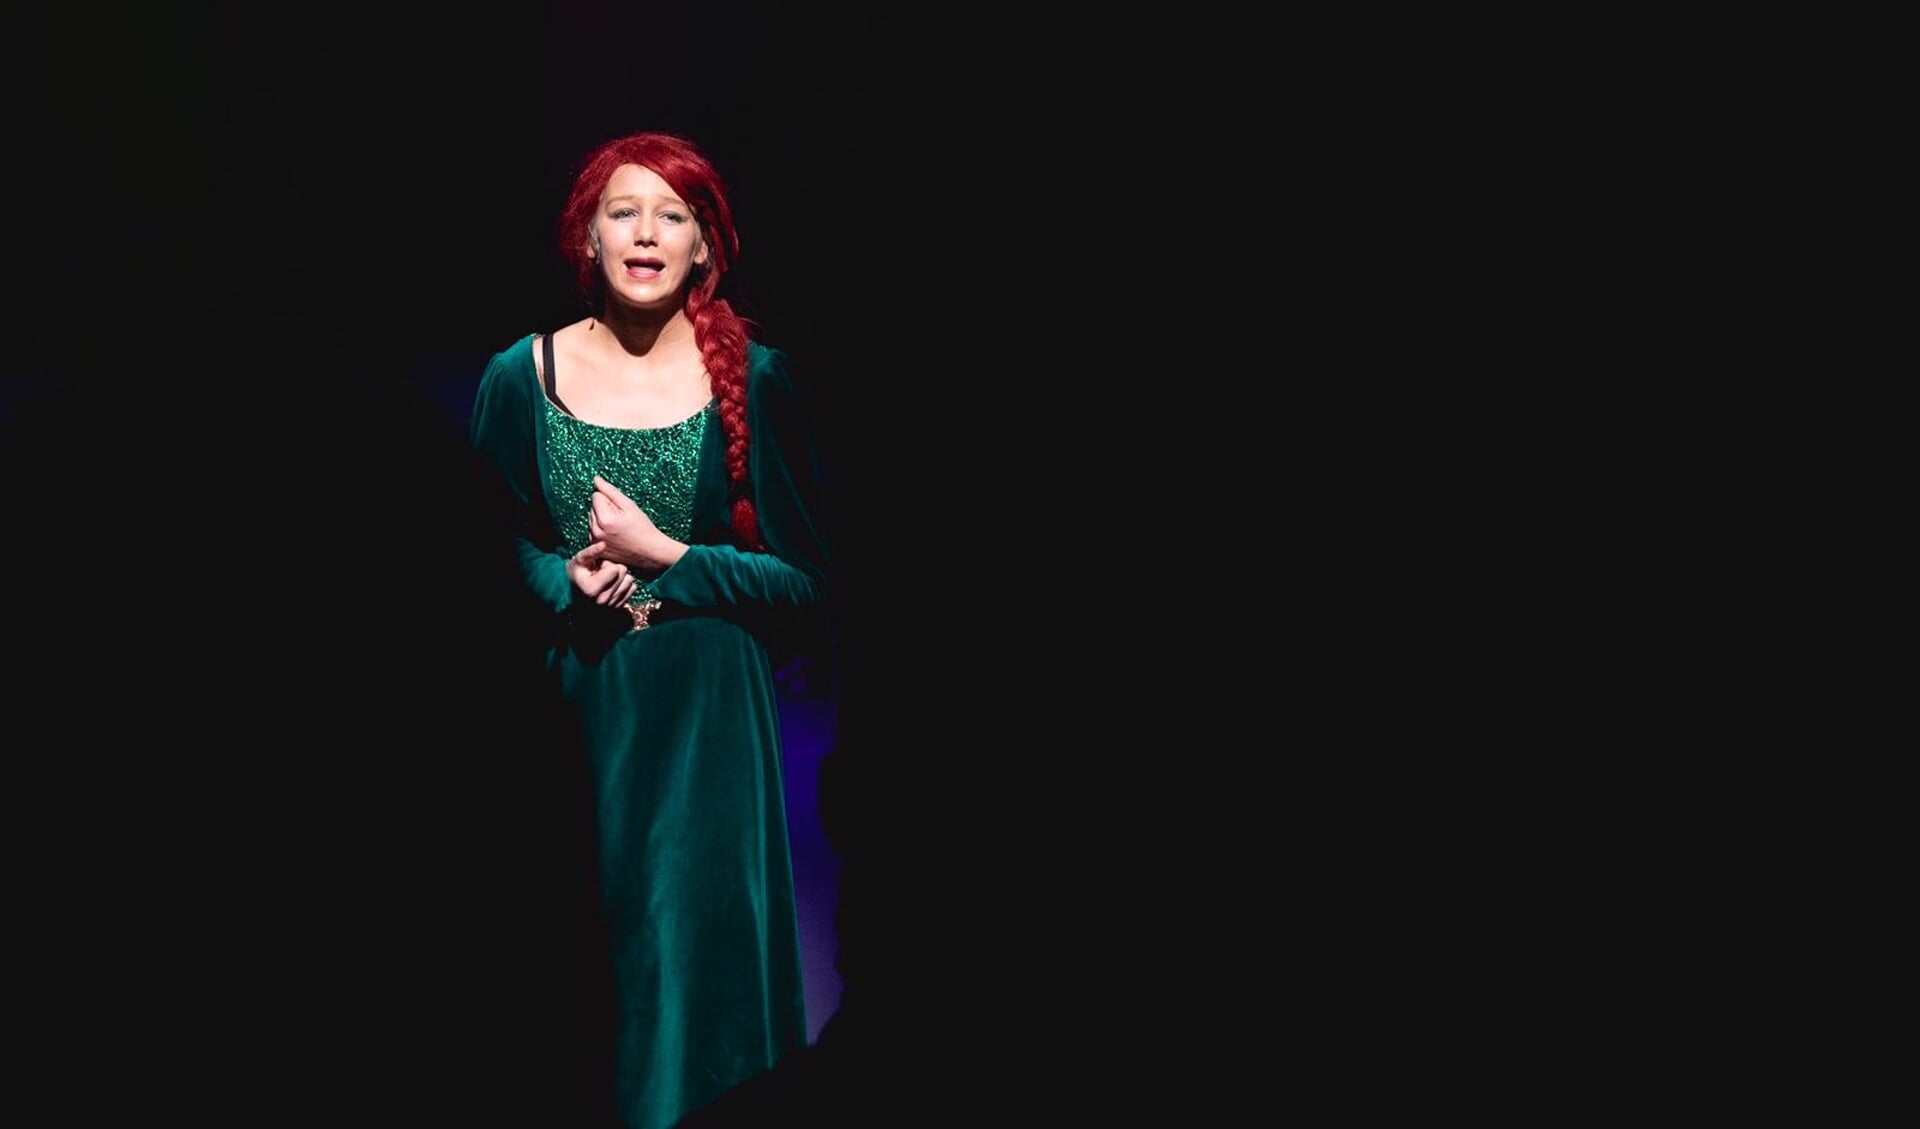 Marilou Ruigrok zingt de sterren van de Noordwijkerhoutse hemel in haar glansrol als Prinses Fiona. | Foto: pr